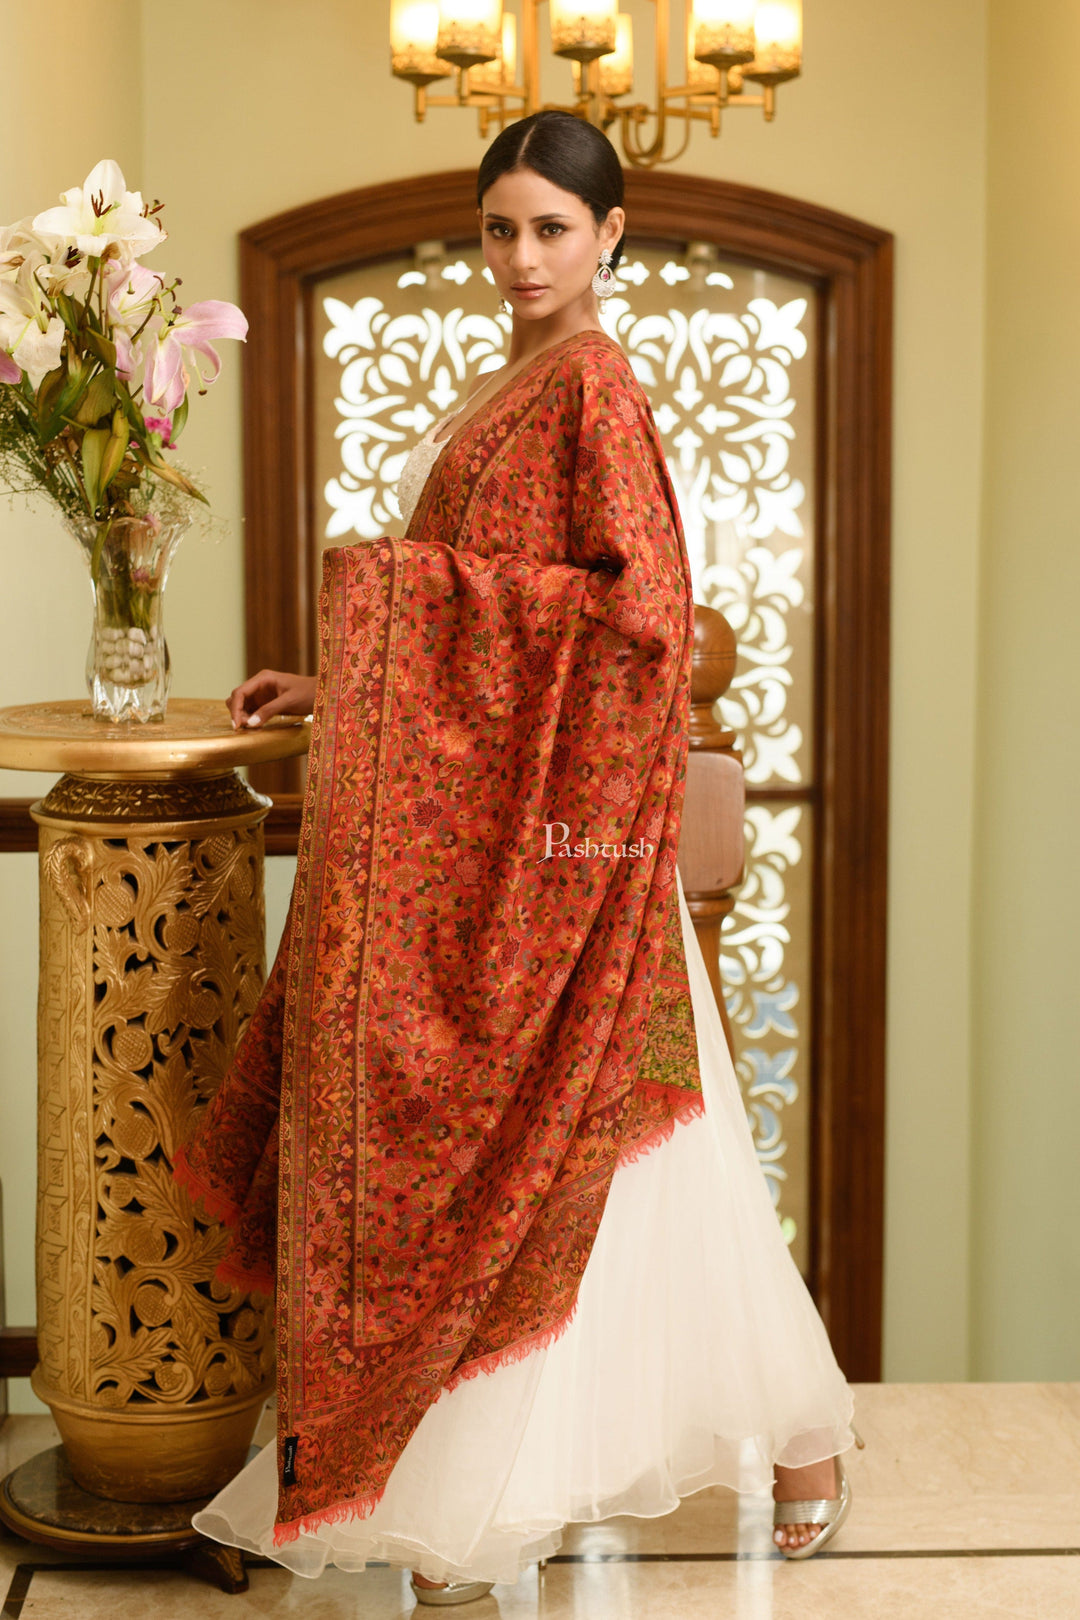 Pashtush India Womens Shawls Pashtush Womens 100% Pure Wool With Woolmark Certificate Shawl, Ethnic Weave Design, Red